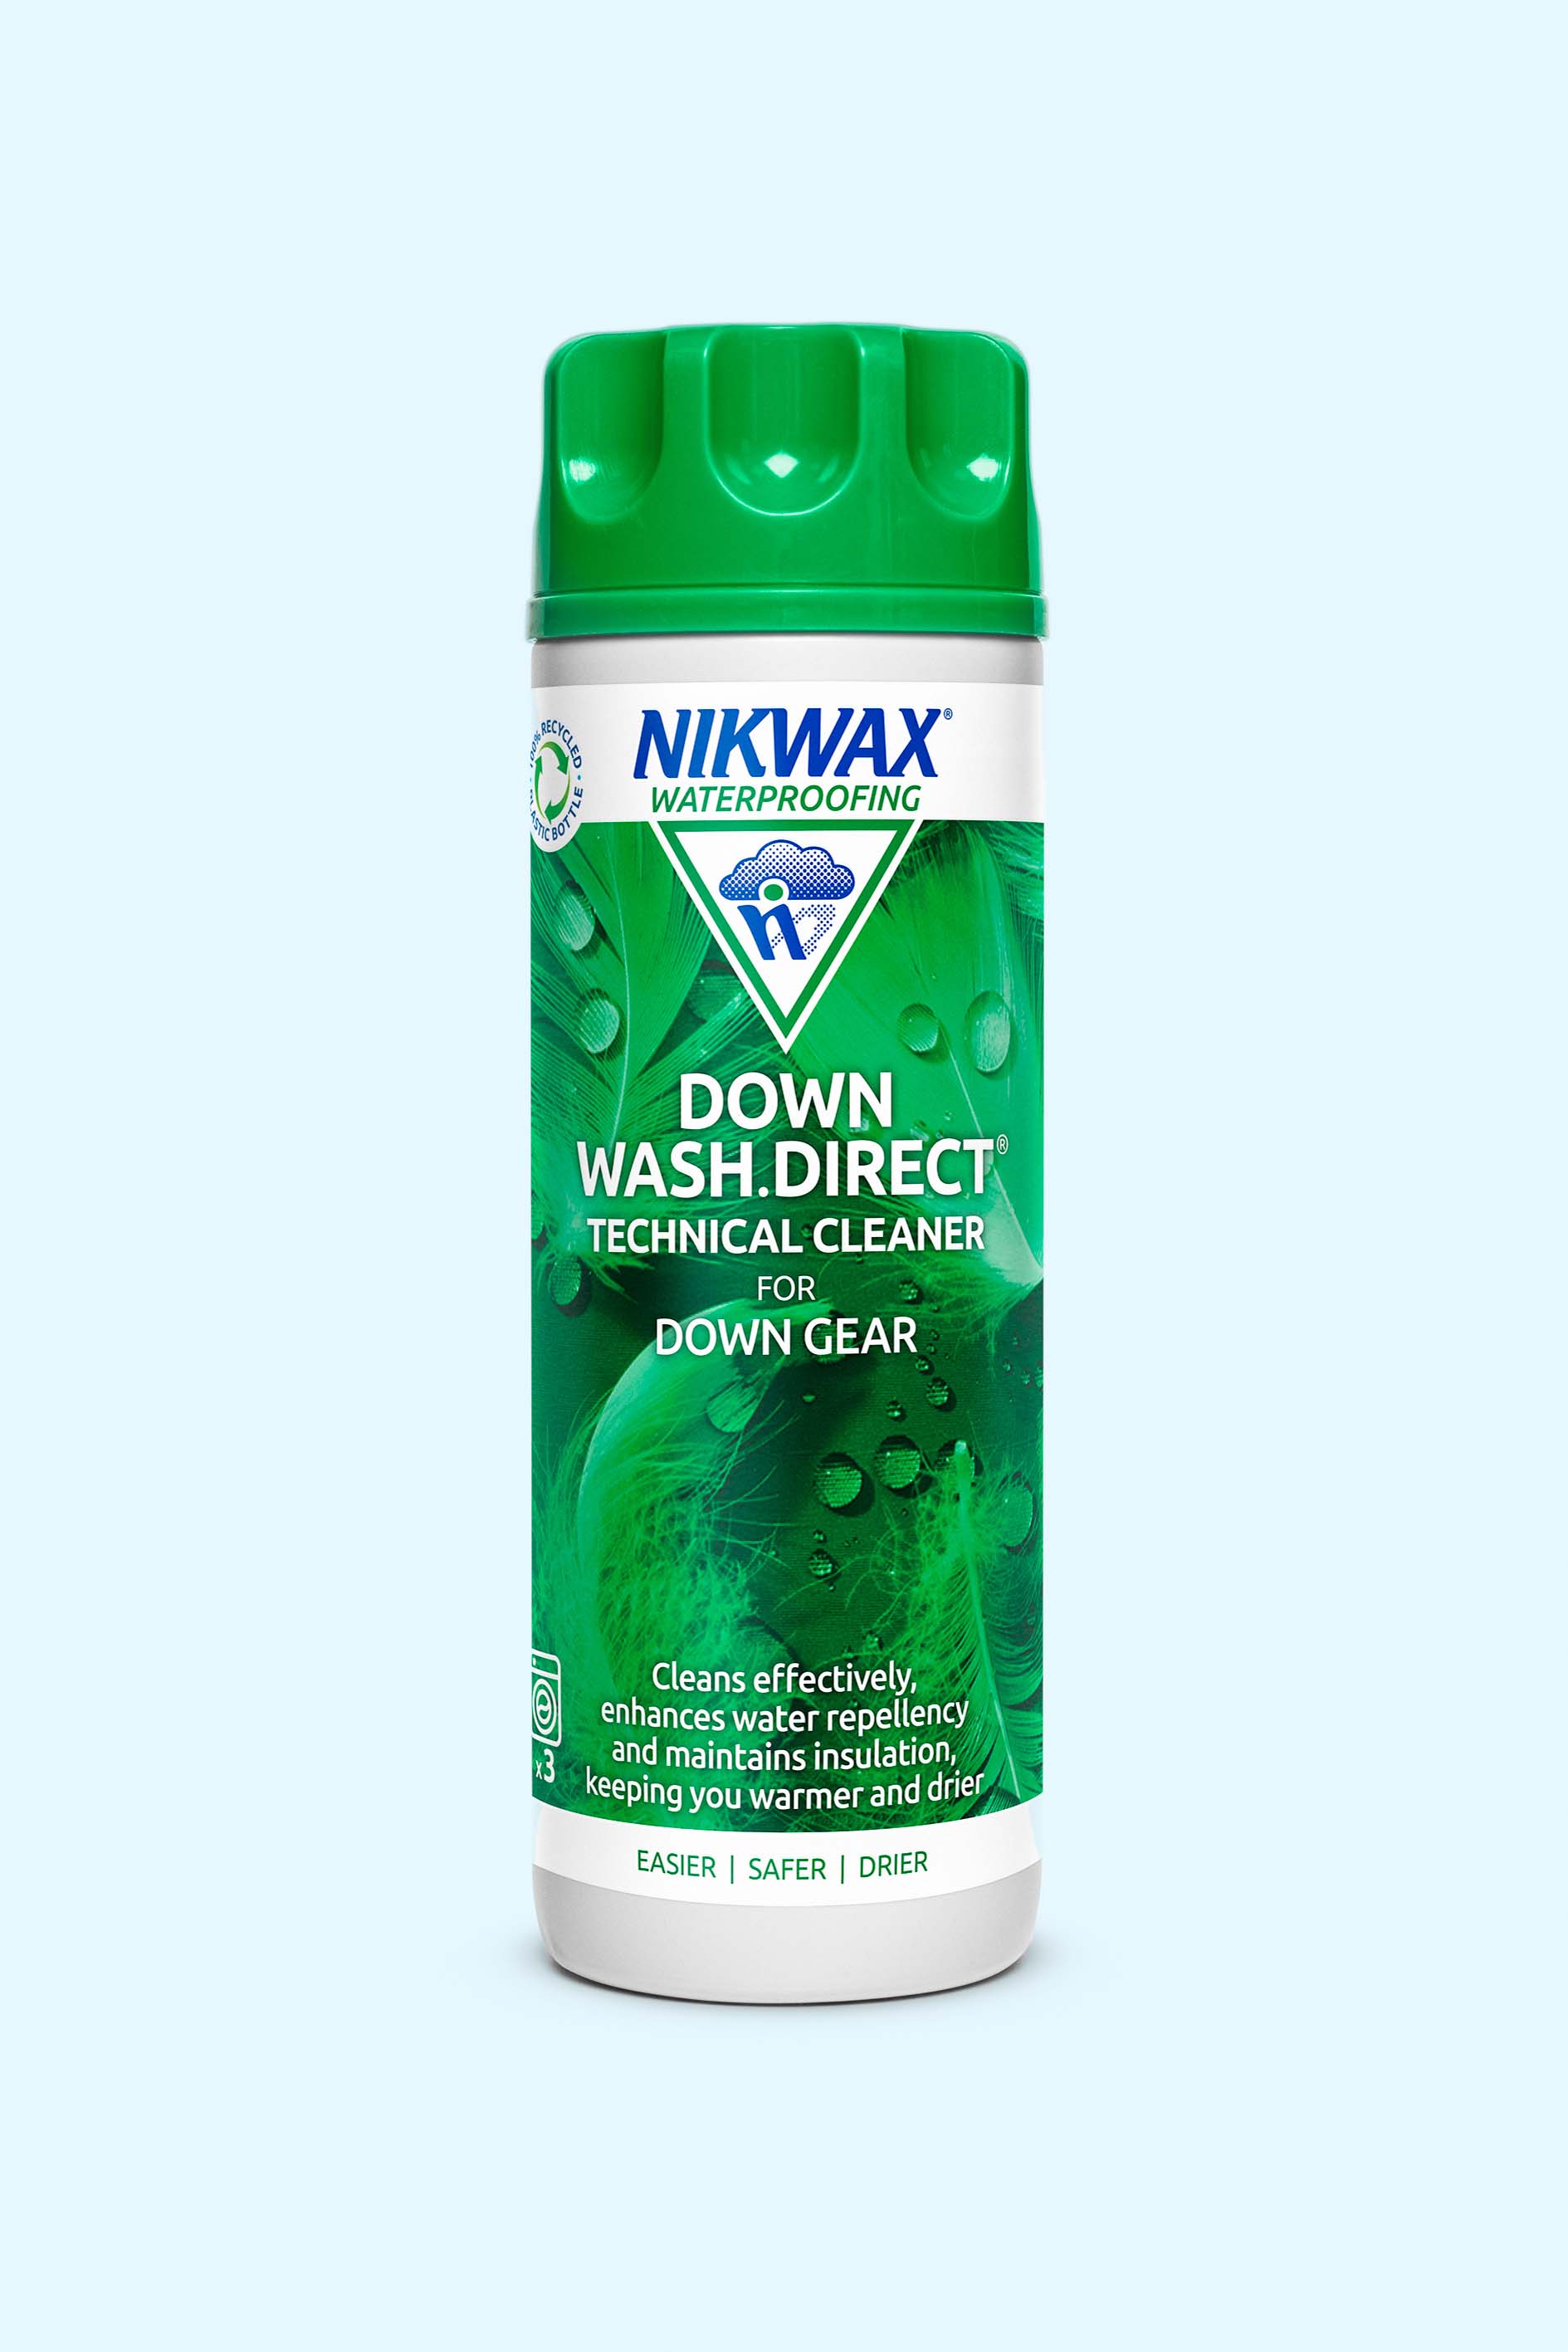 Nikwax Nikwax Tech Wash 300ml